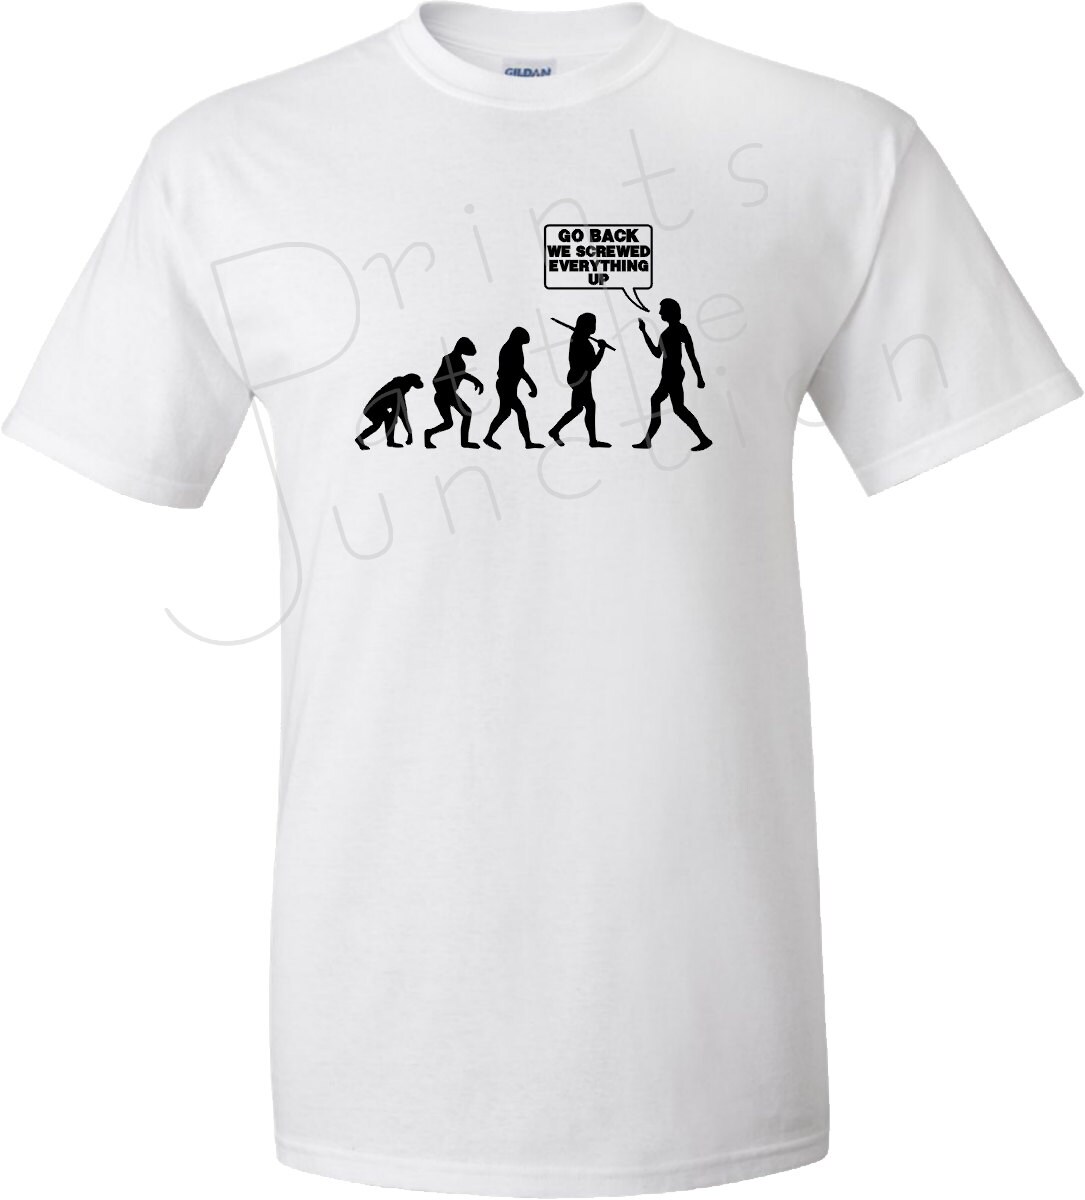 Funny Evolution T-Shirt/Evolution Of Man Shirt/Go Back We